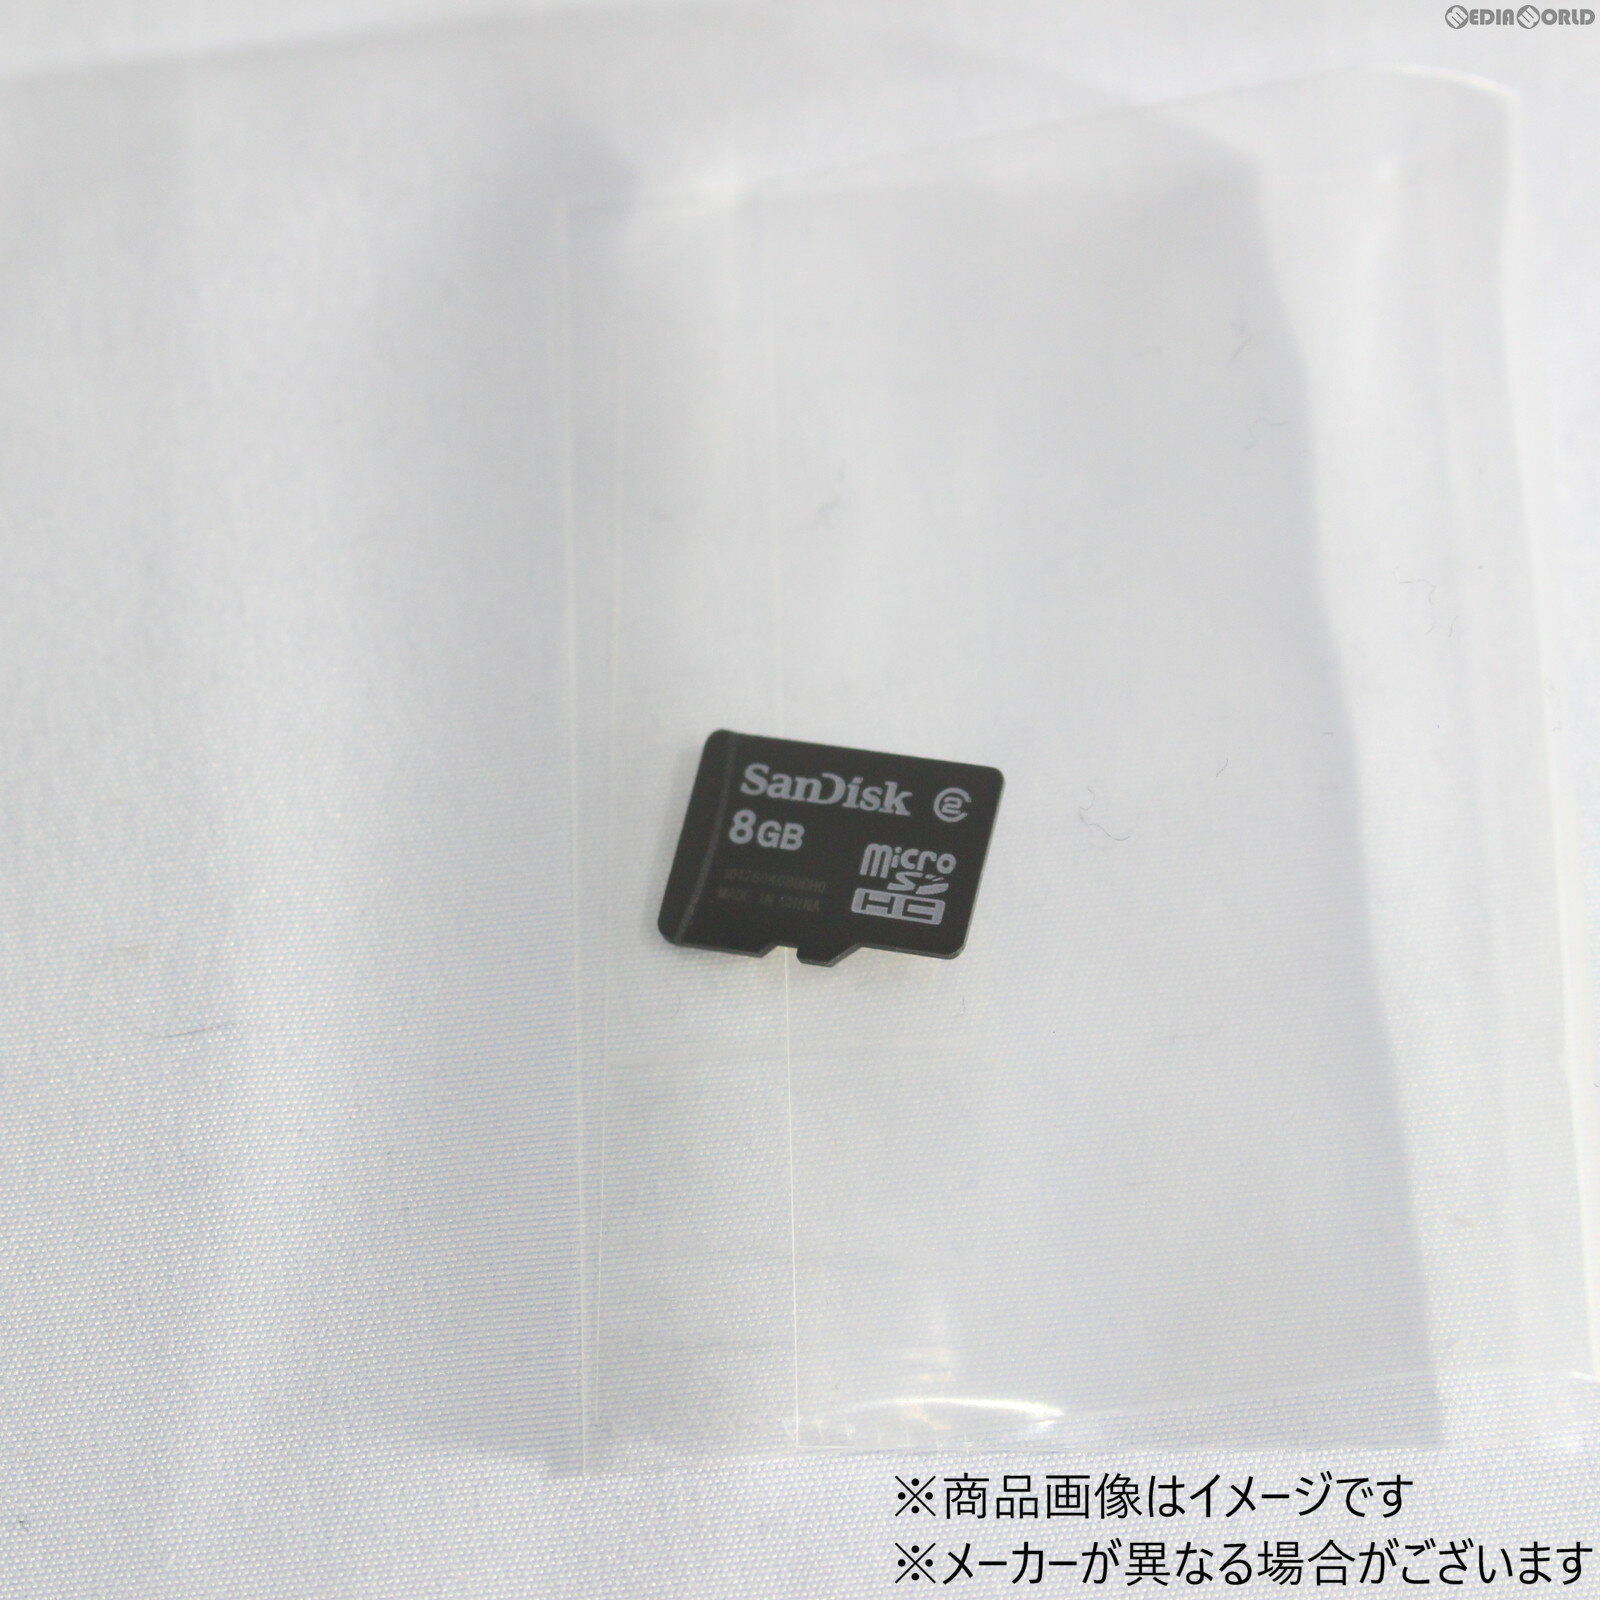 【中古】[ACC][Switch]microSDHCカード(マイクロSDHCカード) 8GB nintendo互換製品 ※New3DSで動作確認済(20120131)